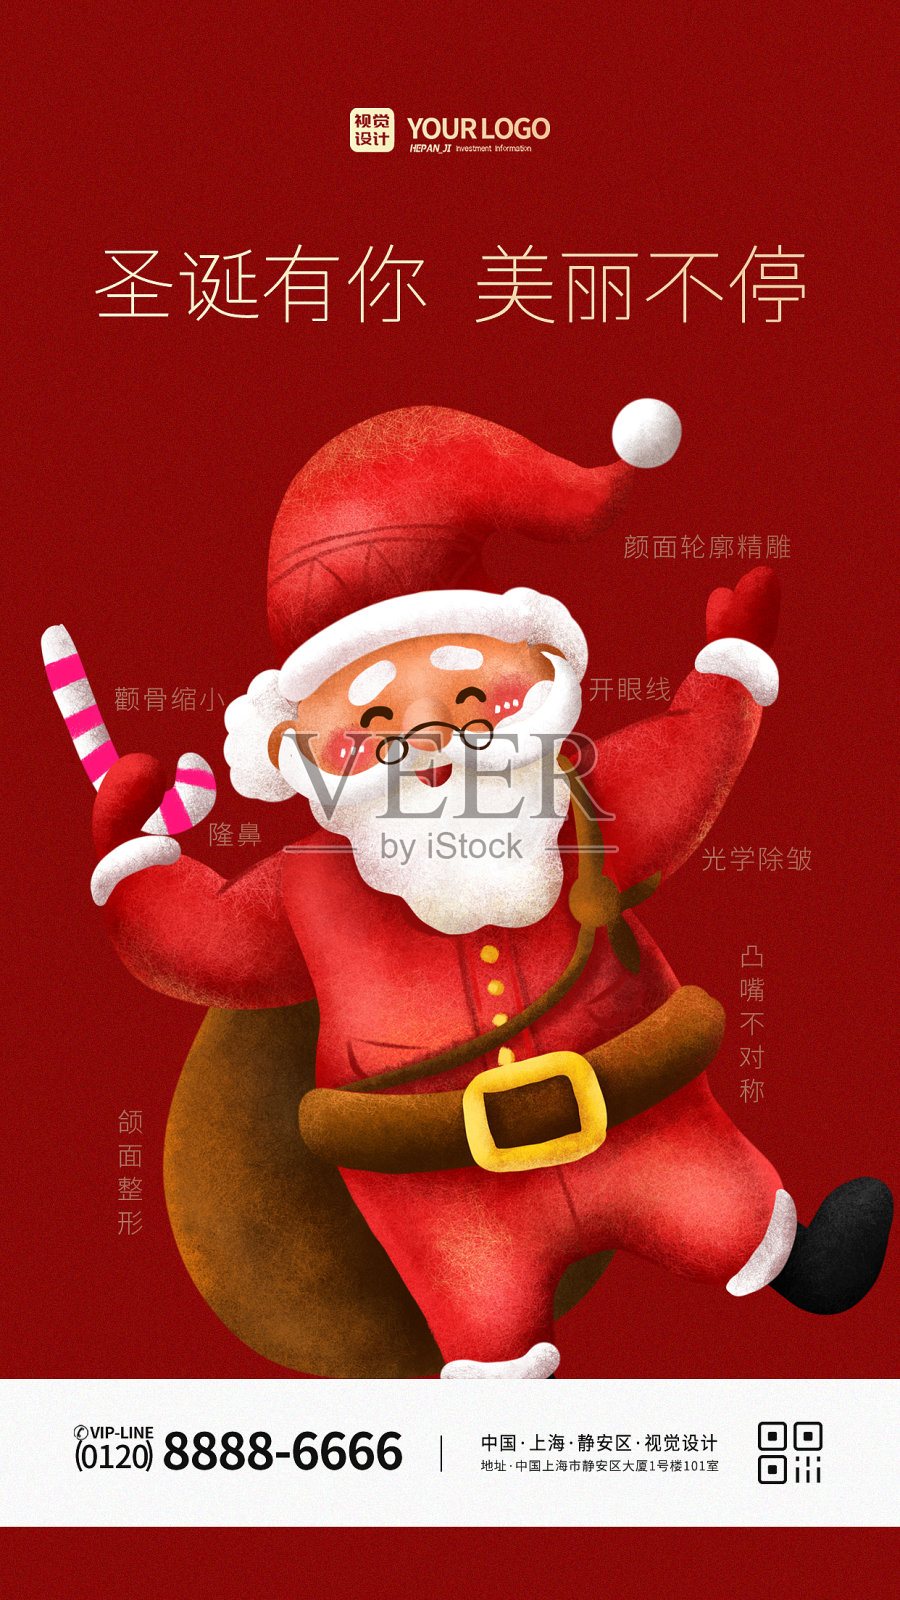 红色插画圣诞医美促销手机宣传海报设计模板素材